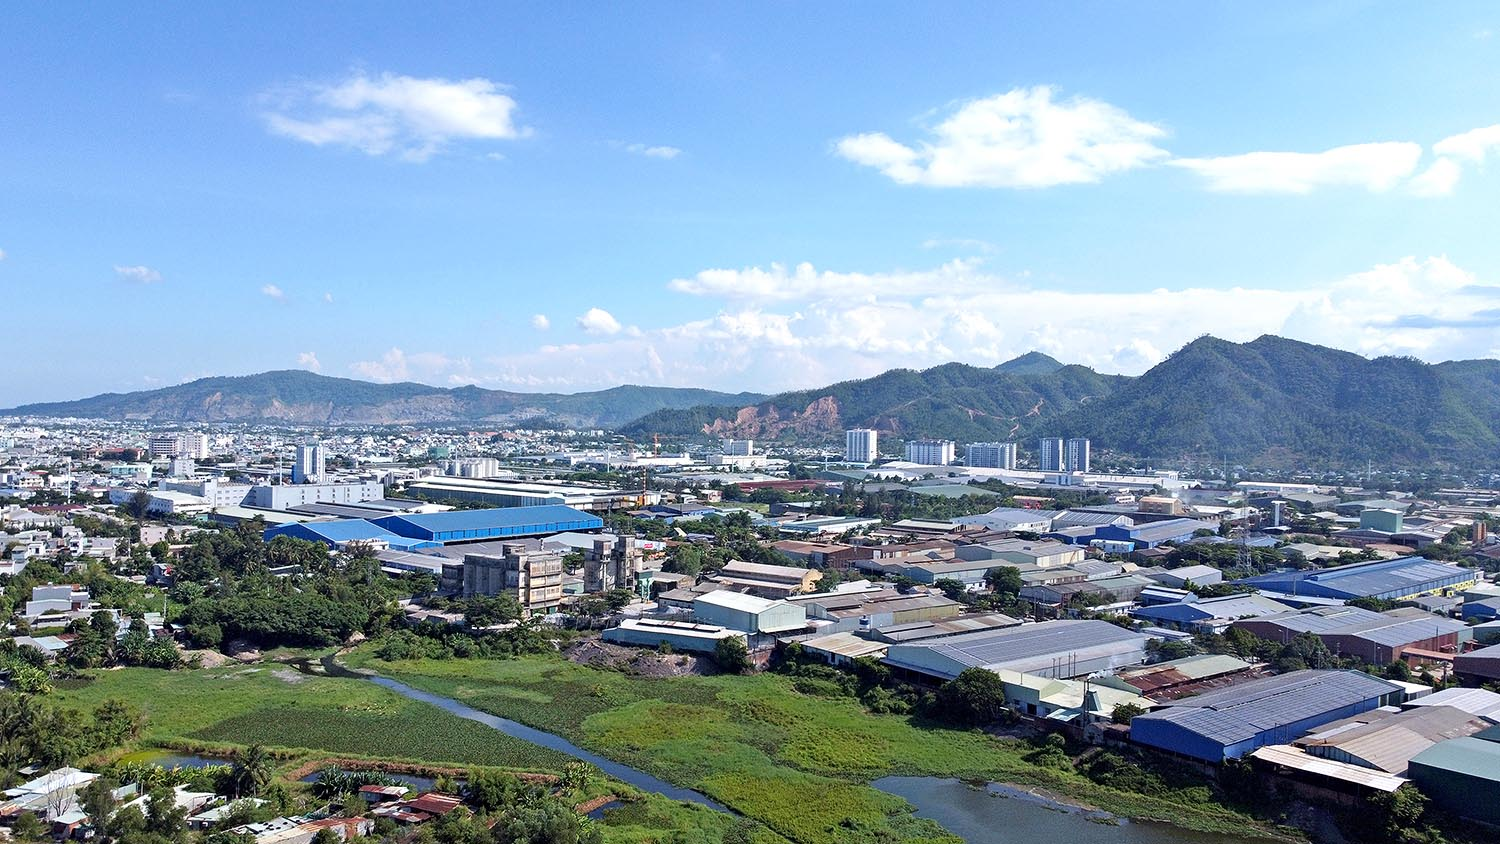 Khu công nghệ cao Đà Nẵng đang đóng vai trò kết nối chuỗi cung ứng giữa tỉnh này và các KCN trọng điểm tại khu vực miền Trung